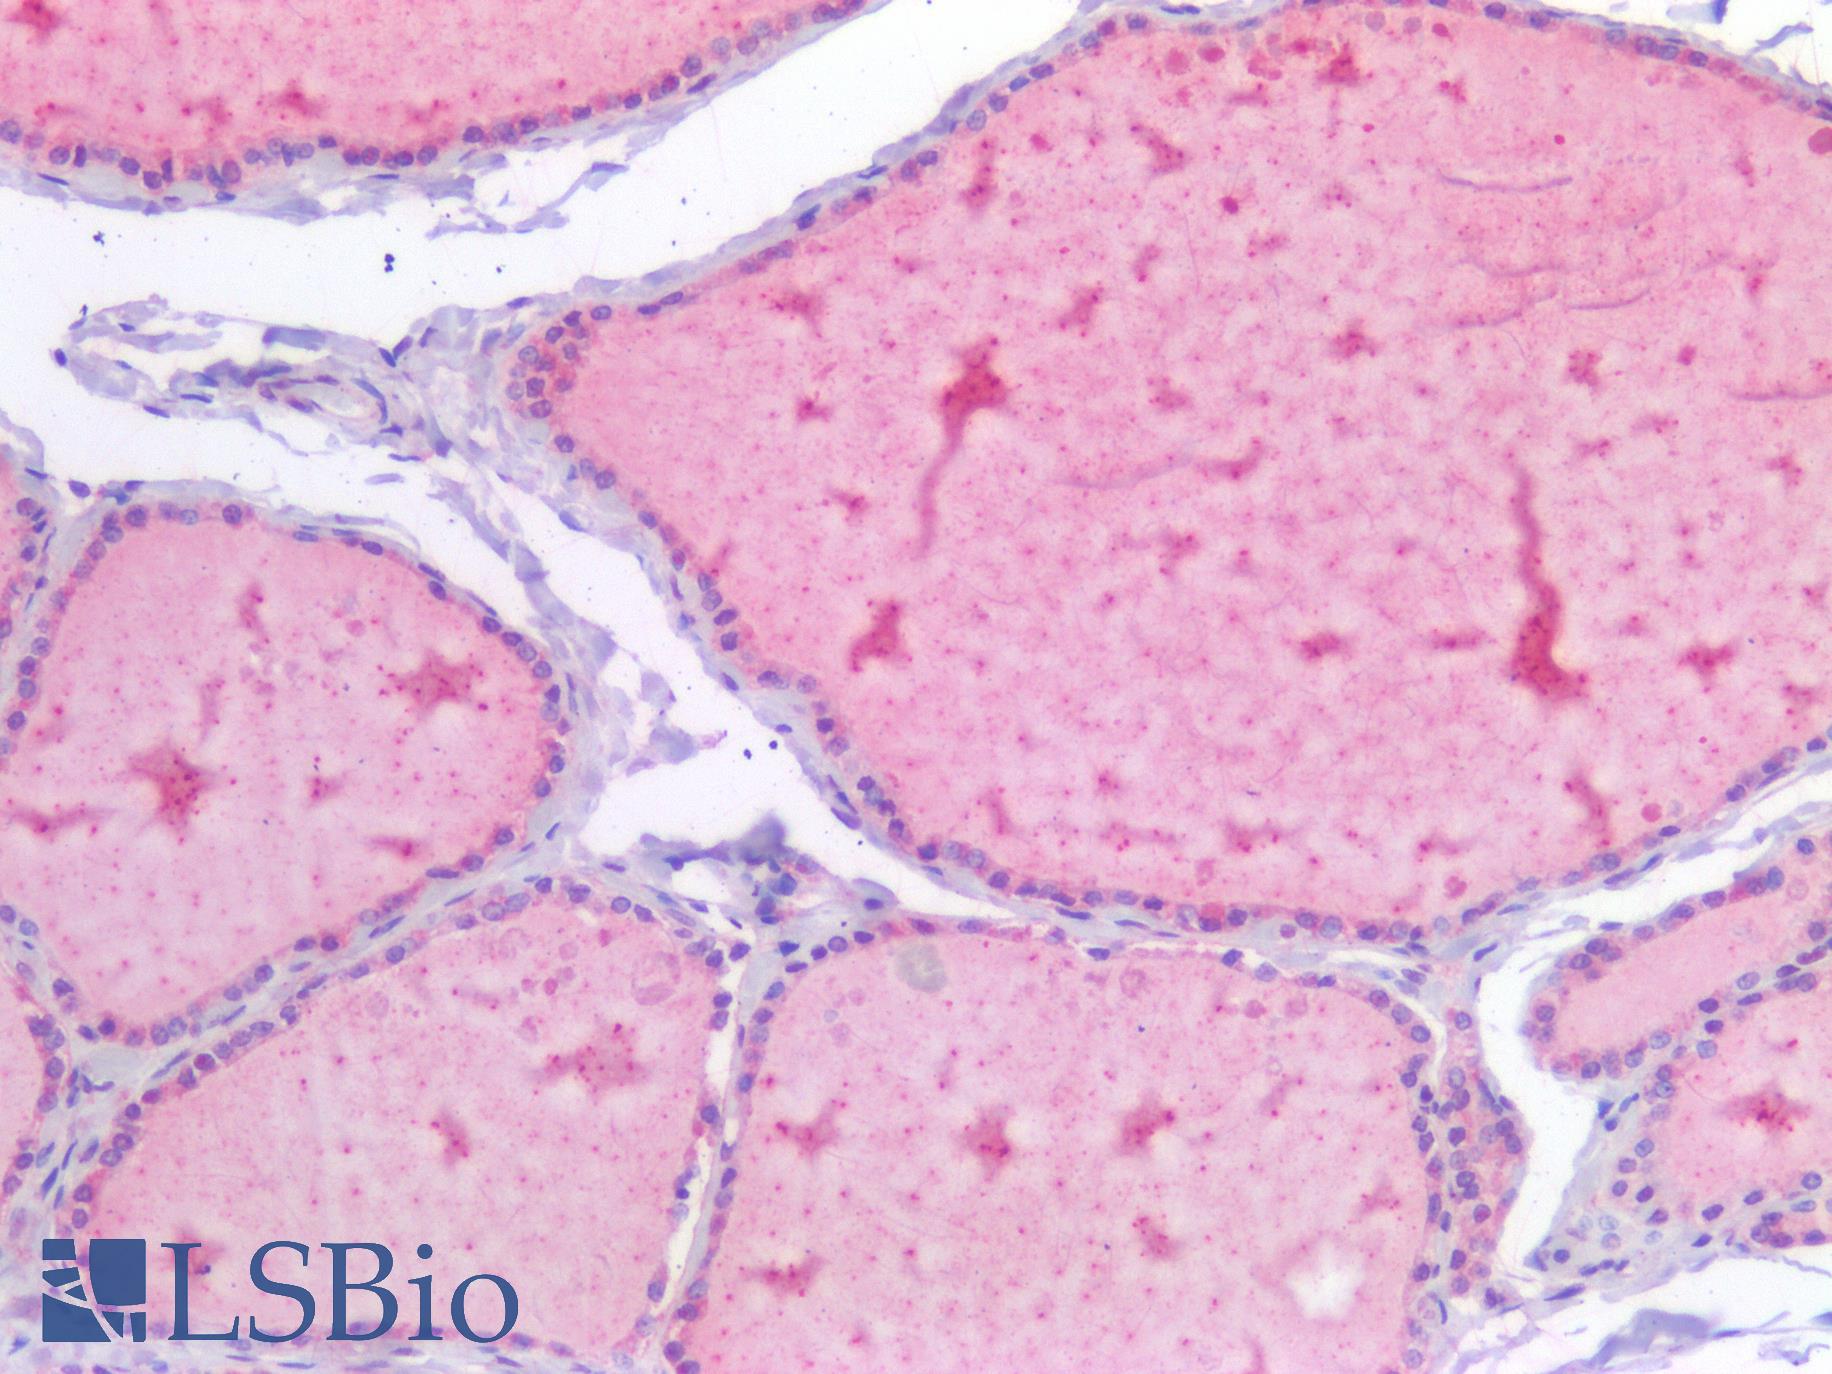 USP19 Antibody - Human Thyroid: Formalin-Fixed, Paraffin-Embedded (FFPE)